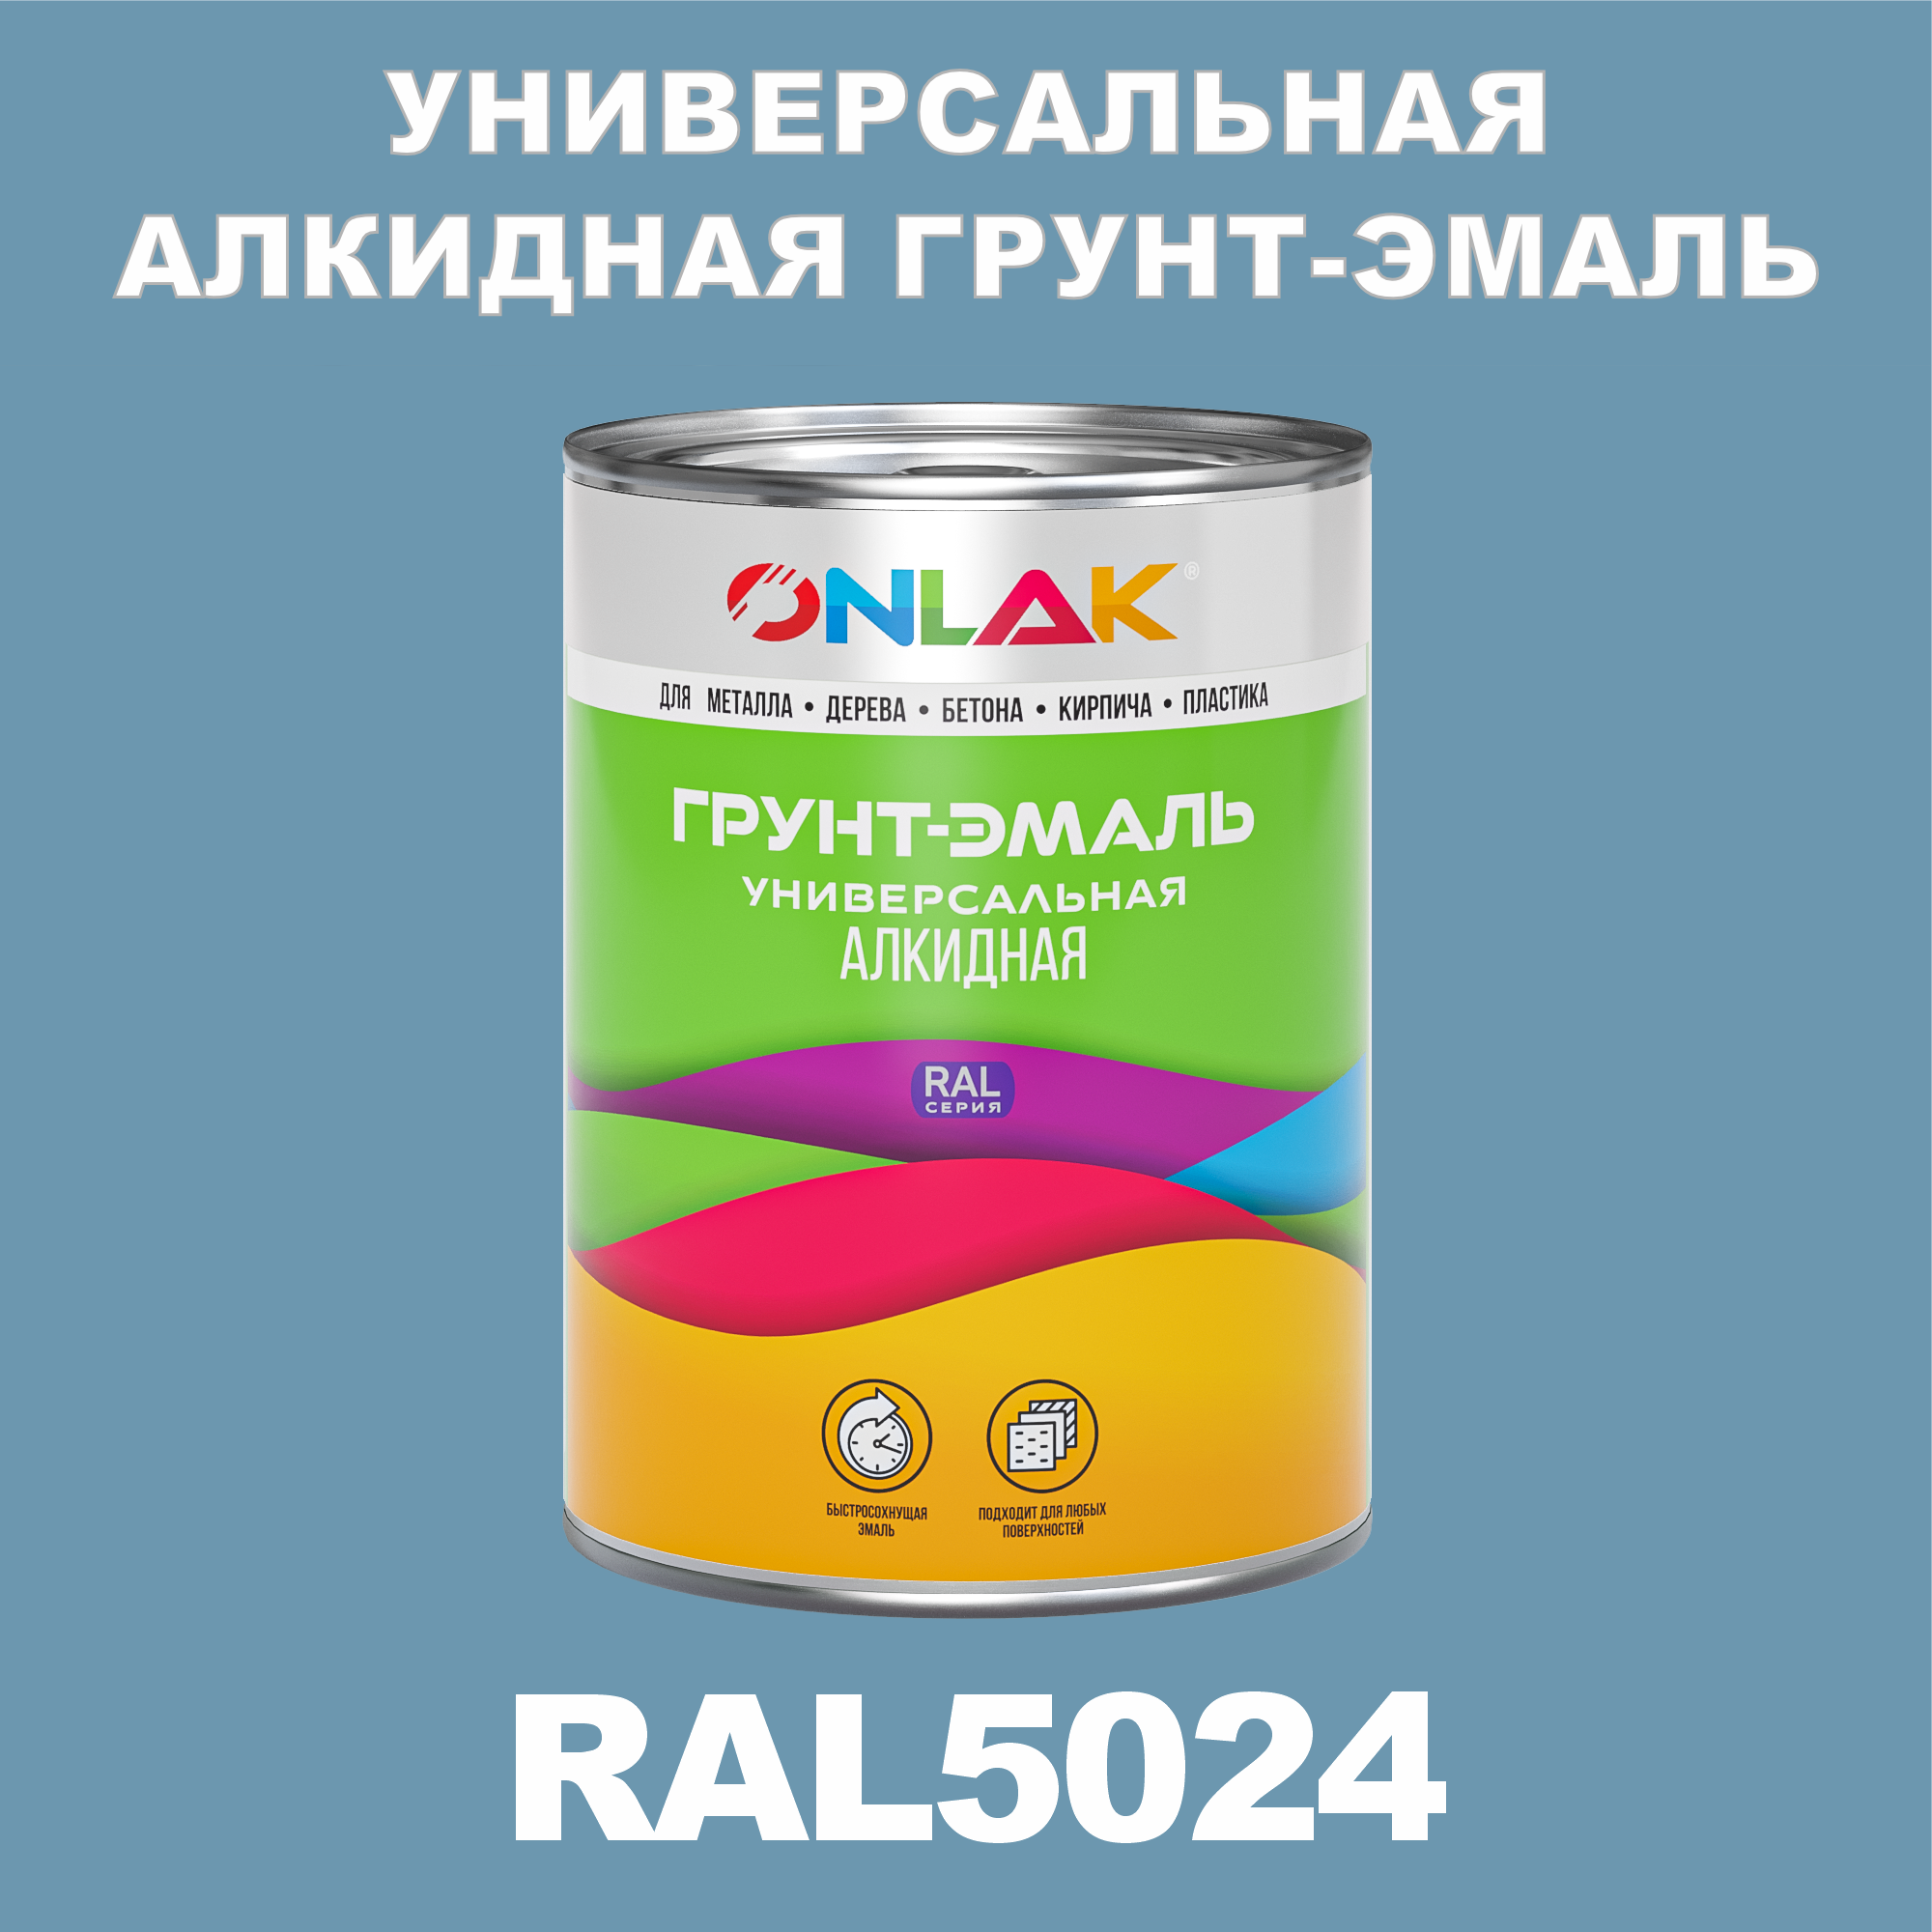 Грунт-эмаль ONLAK 1К RAL5024 антикоррозионная алкидная по металлу по ржавчине 1 кг грунт эмаль neomid по ржавчине быстросохнущая алкидная серая 0 9 кг